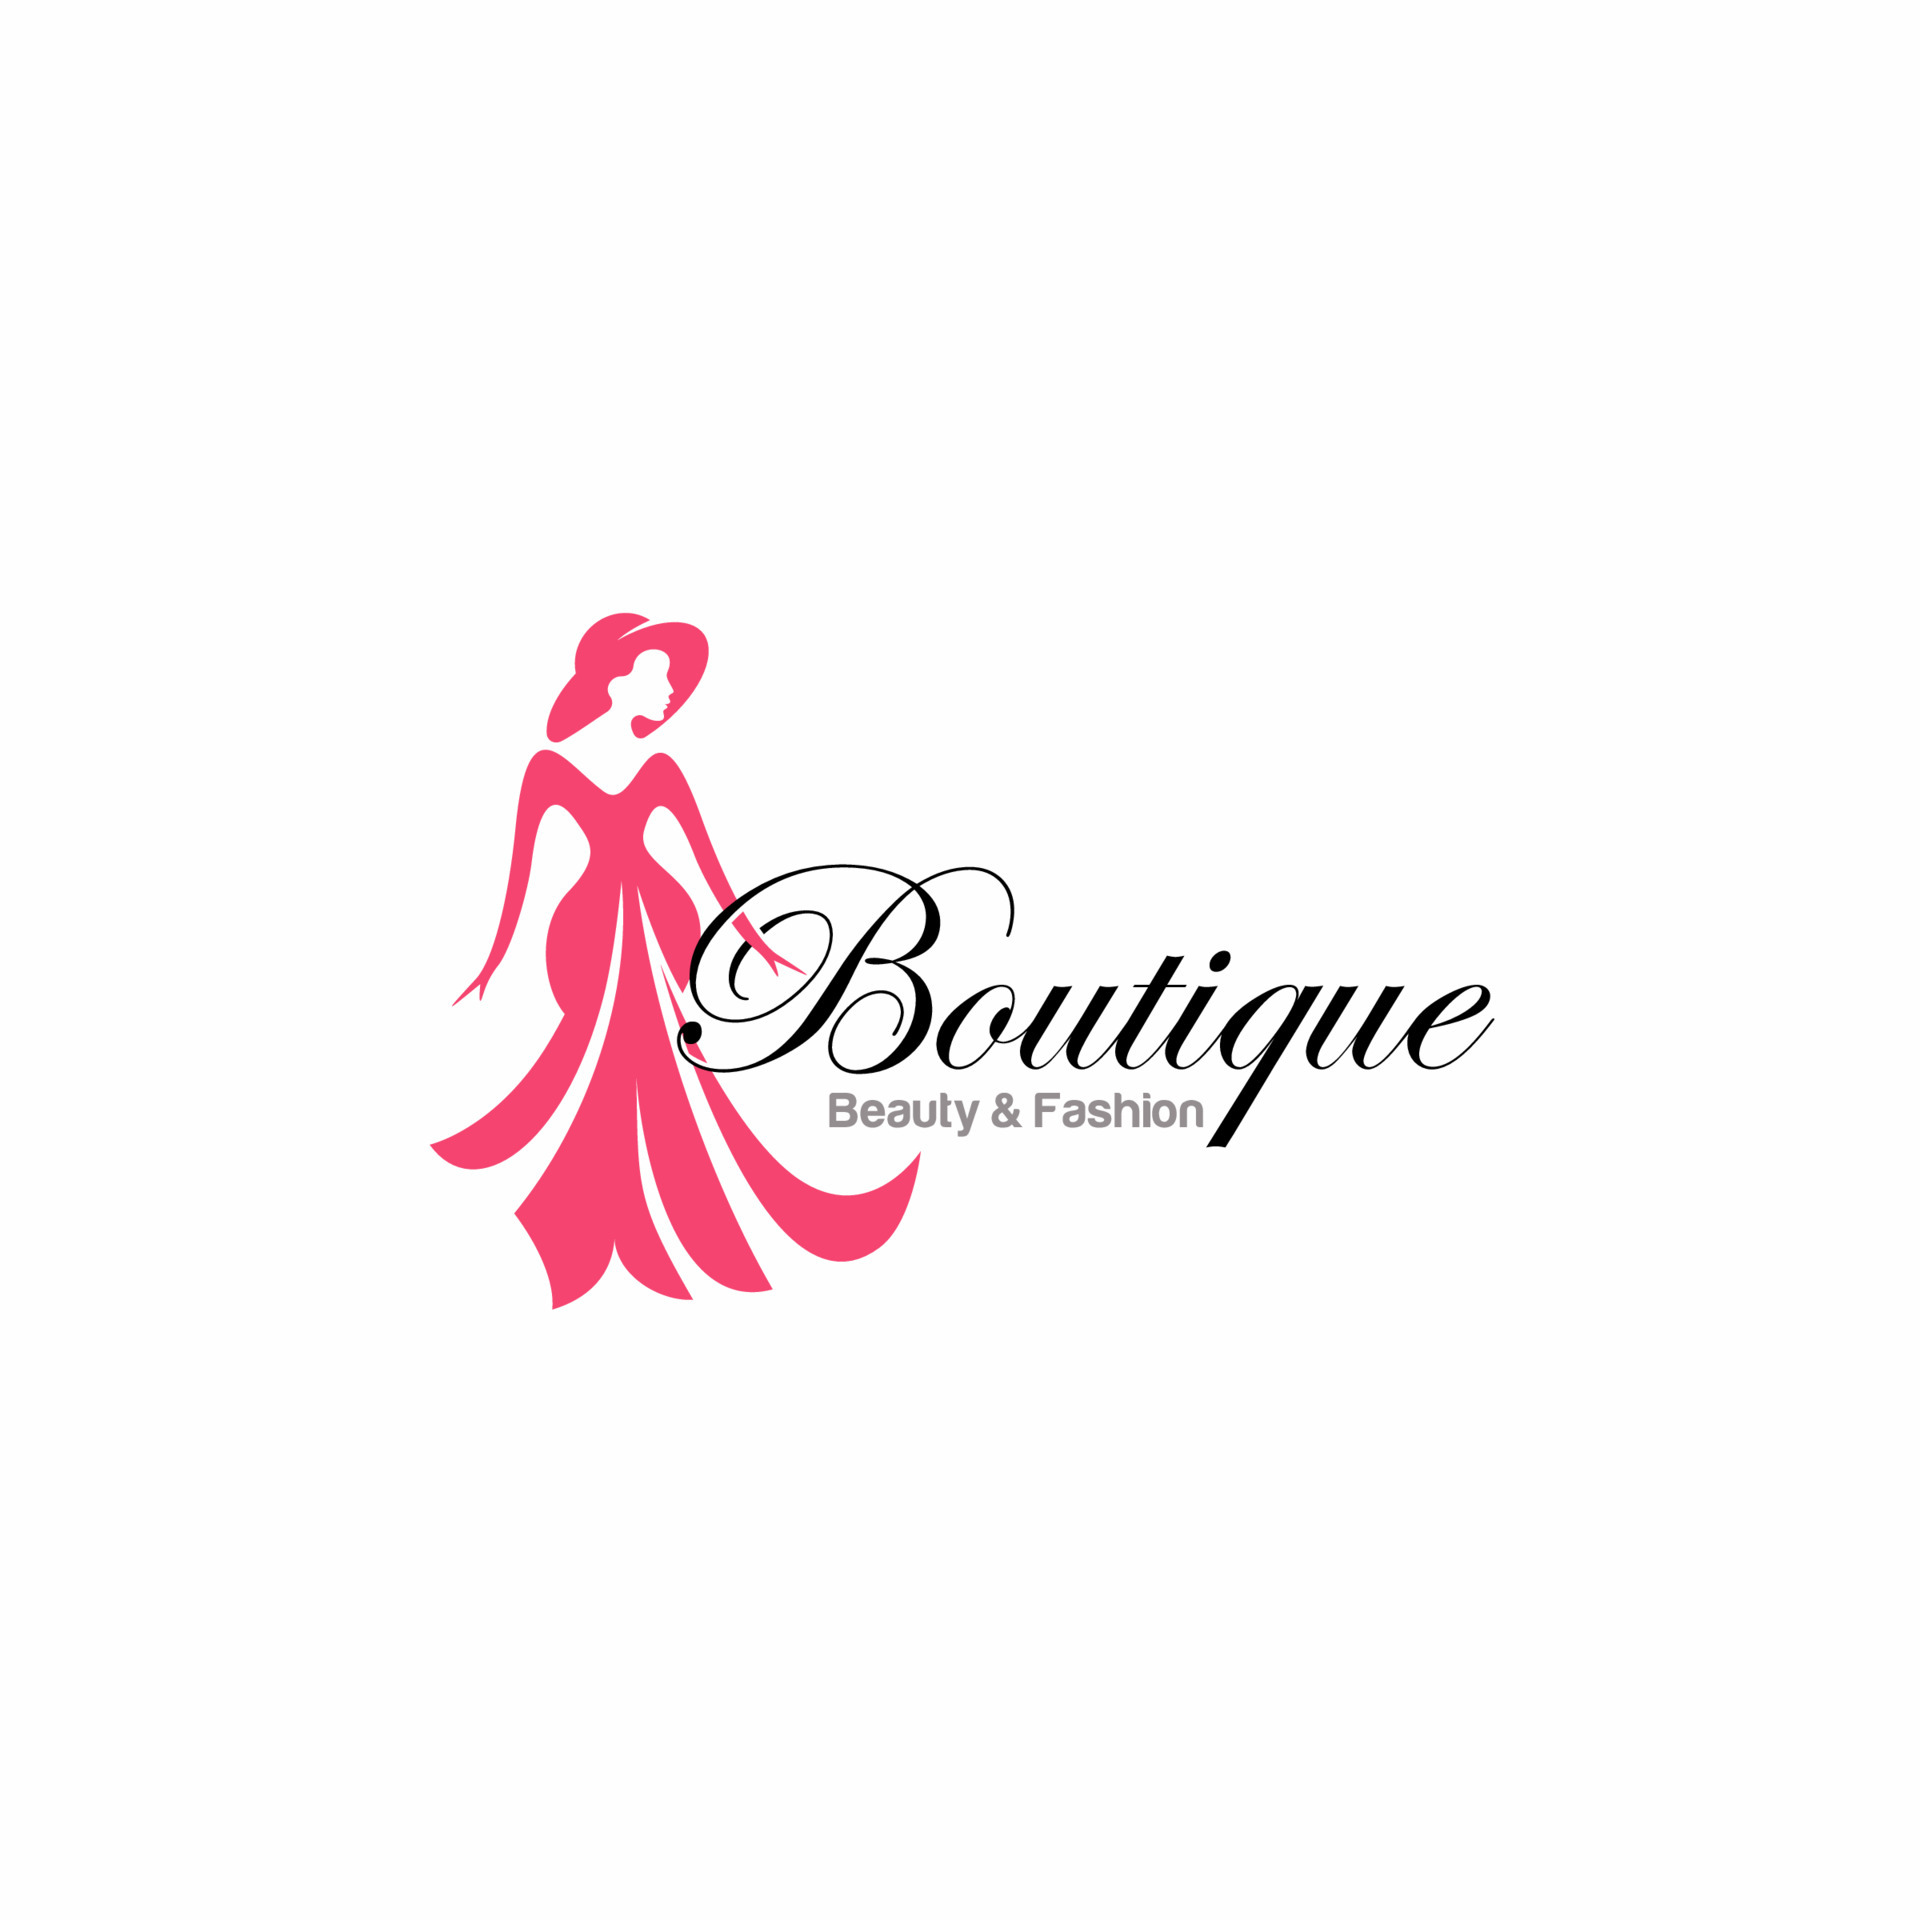 Bridal Wear Boutique. Wedding Gown Sexy Dress Fashion Logo Design ...